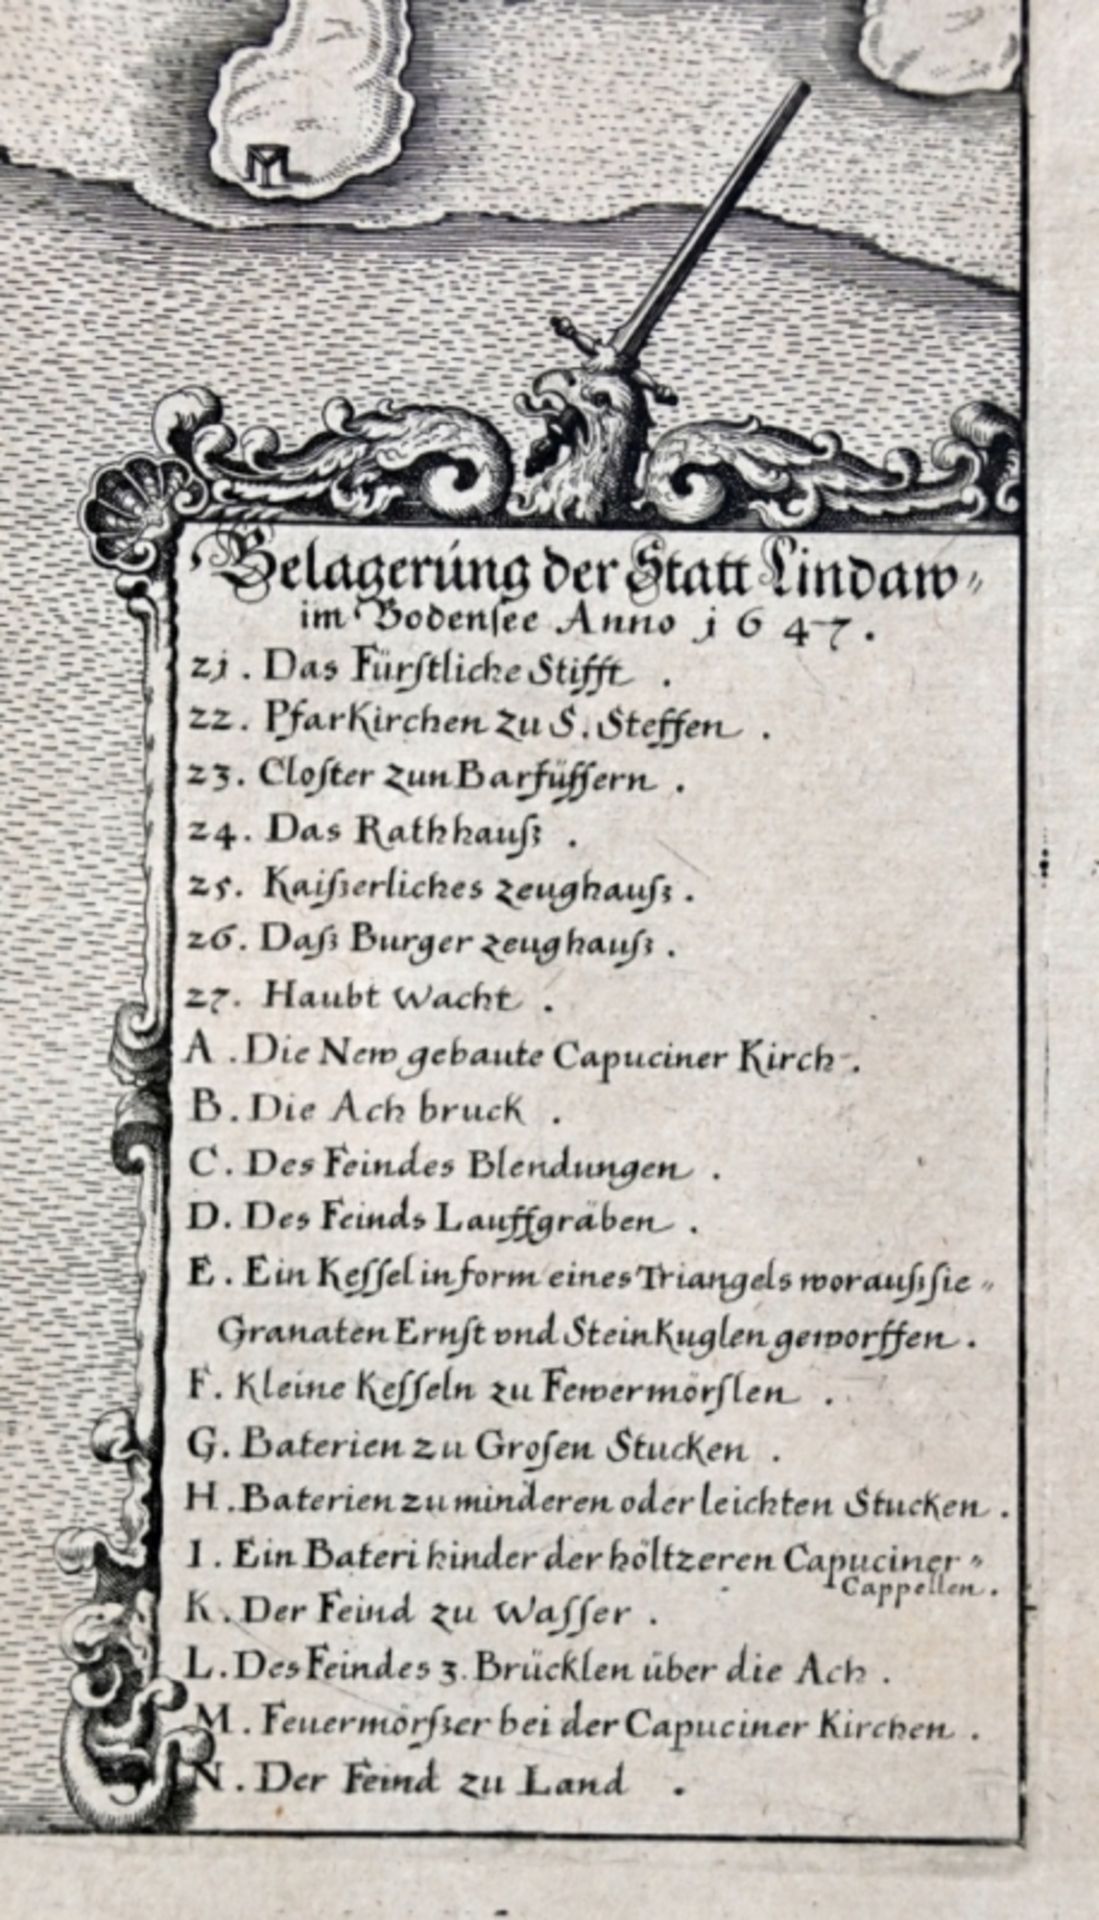 LINDAU "Belagerung der Statt Lindaw im Bodensee Anno 1647" - Bild 5 aus 5